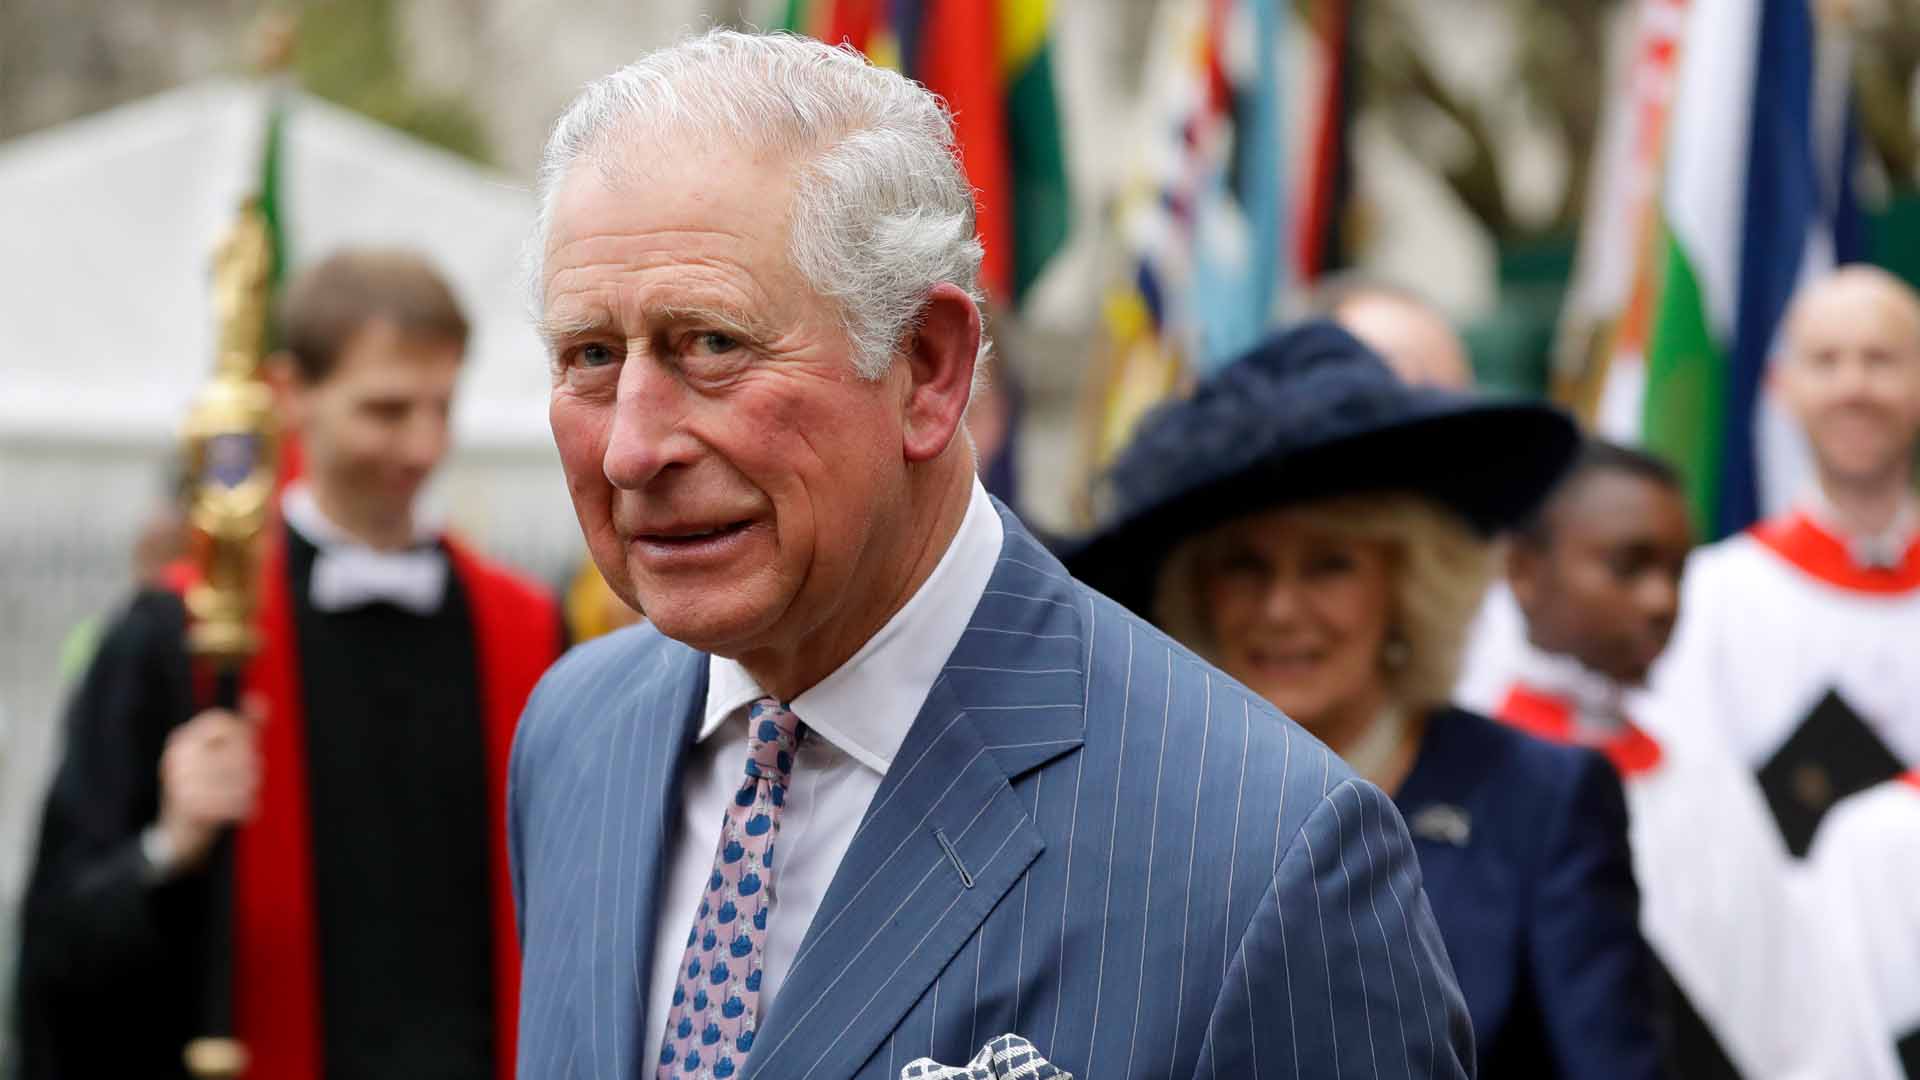 El príncipe Carlos de Inglaterra da positivo por coronavirus